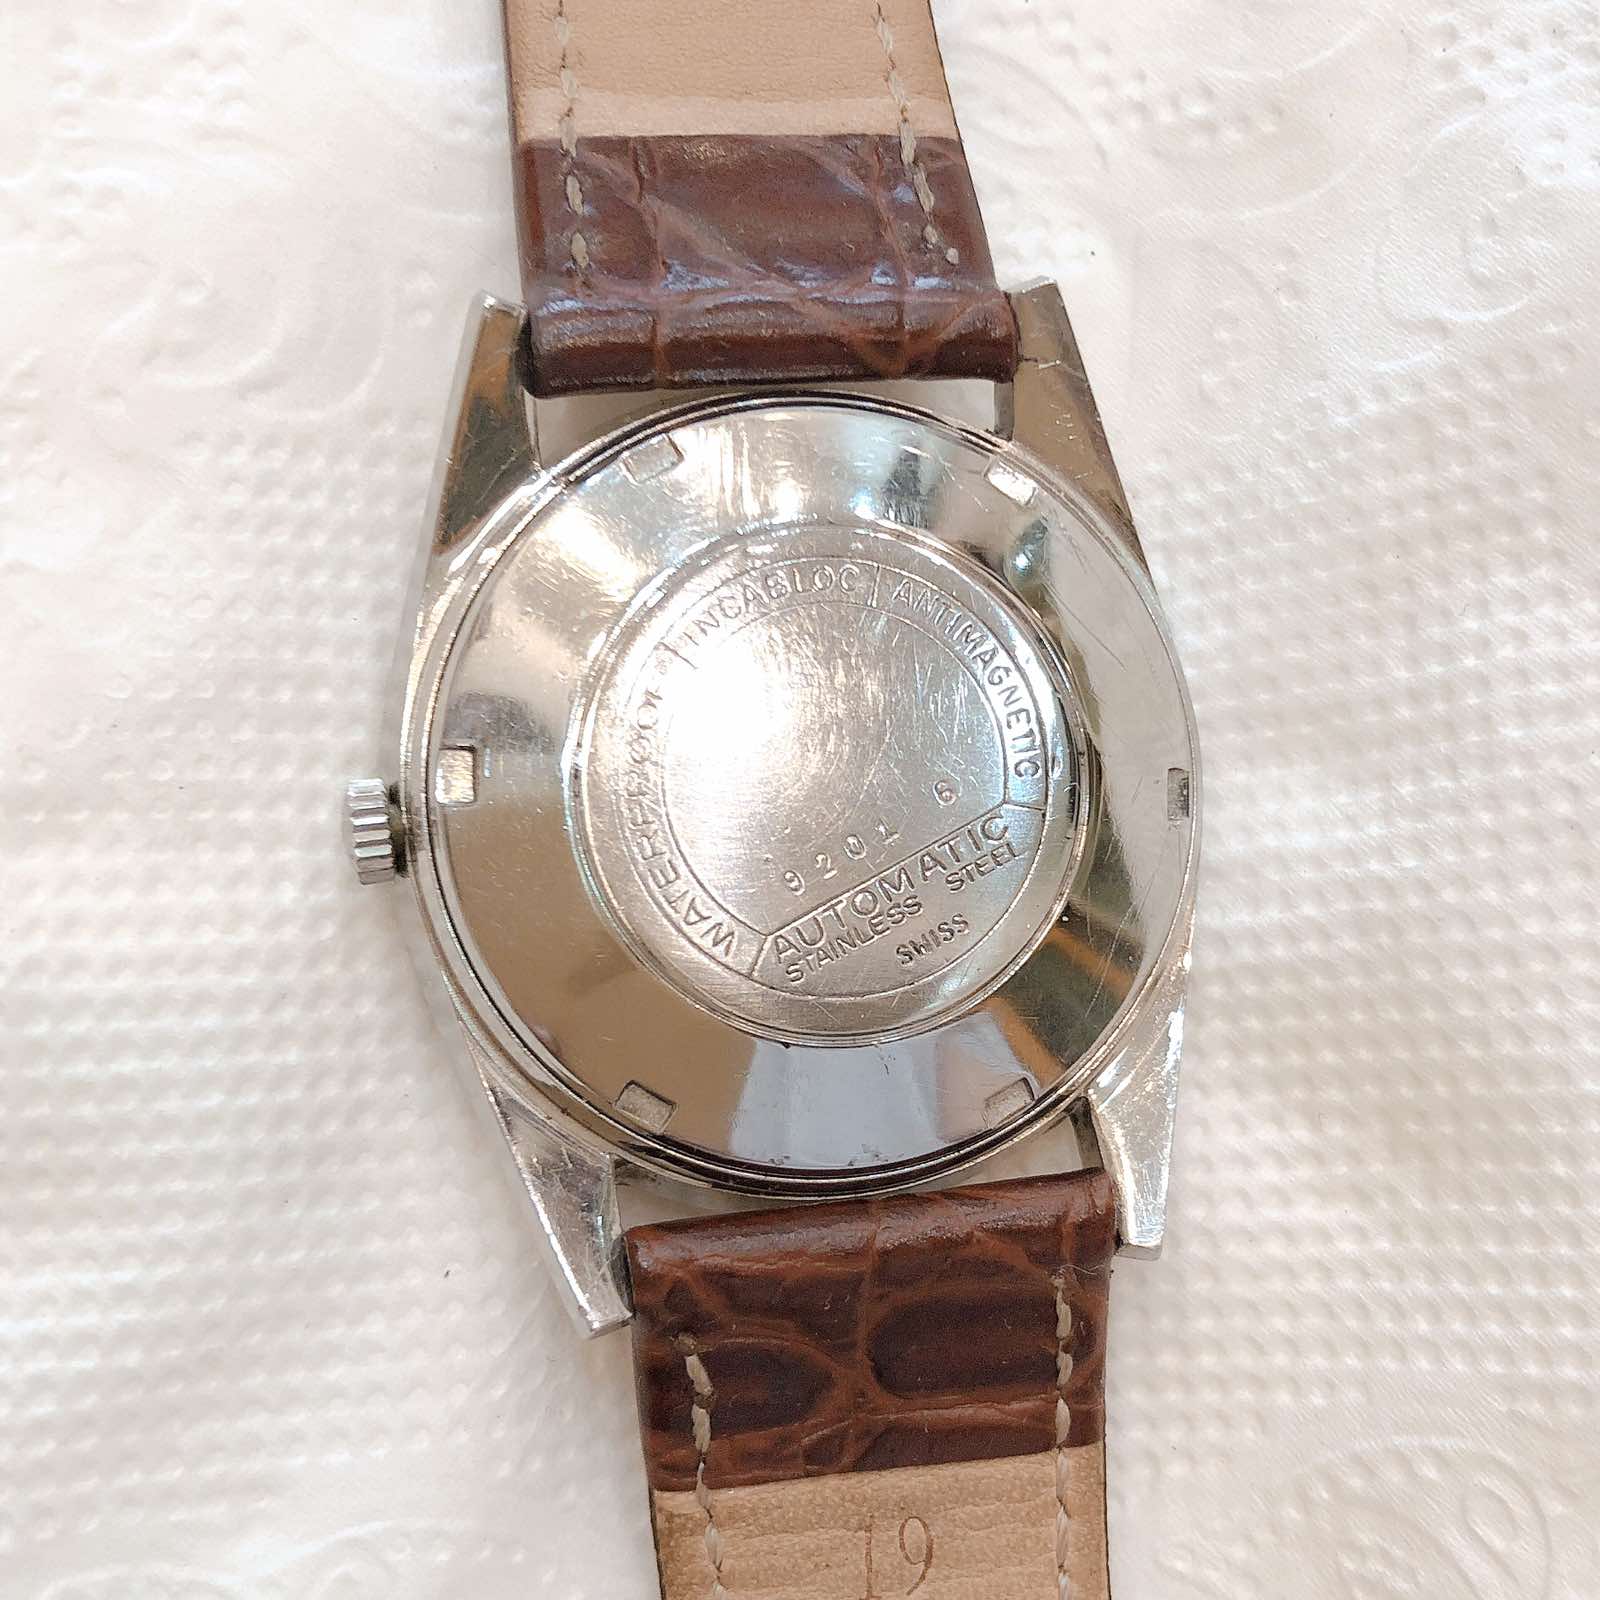 Đồng hồ cổ ELGIN DREFFA Automatic chính hãng Thụy Sỹ 